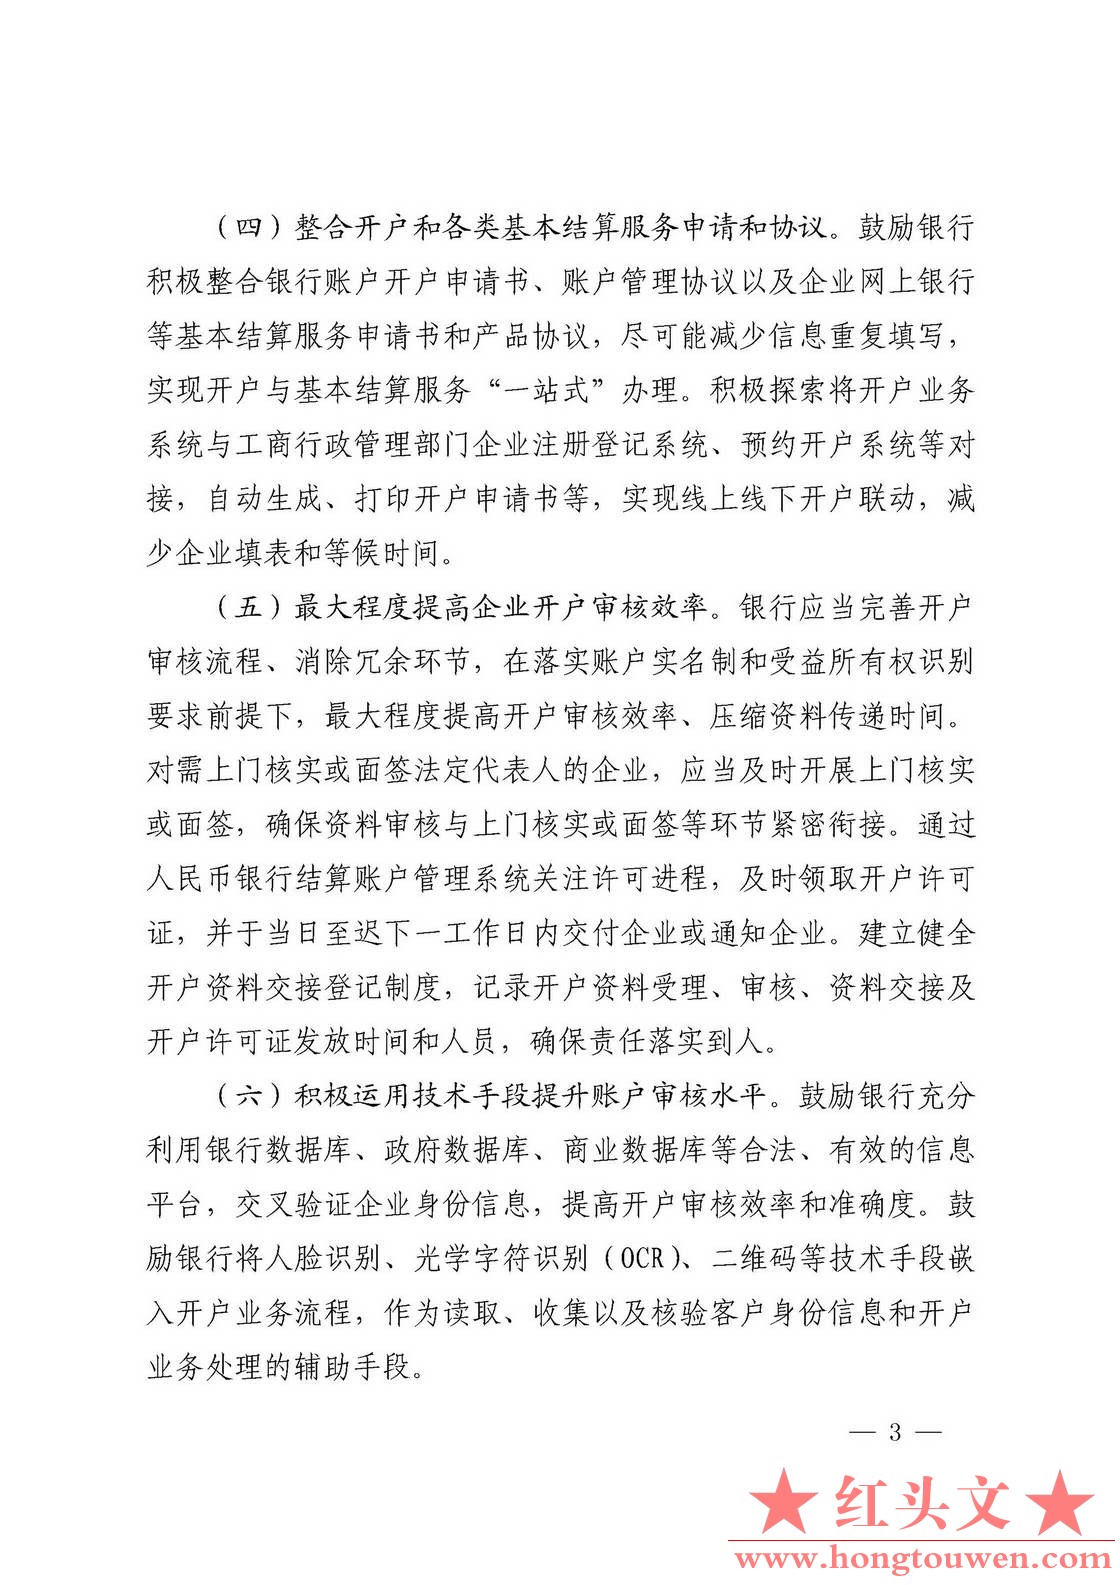 银发[2017]288号-中国人民银行关于优化企业开户服务的指导意见_页面_3.jpg.jpg